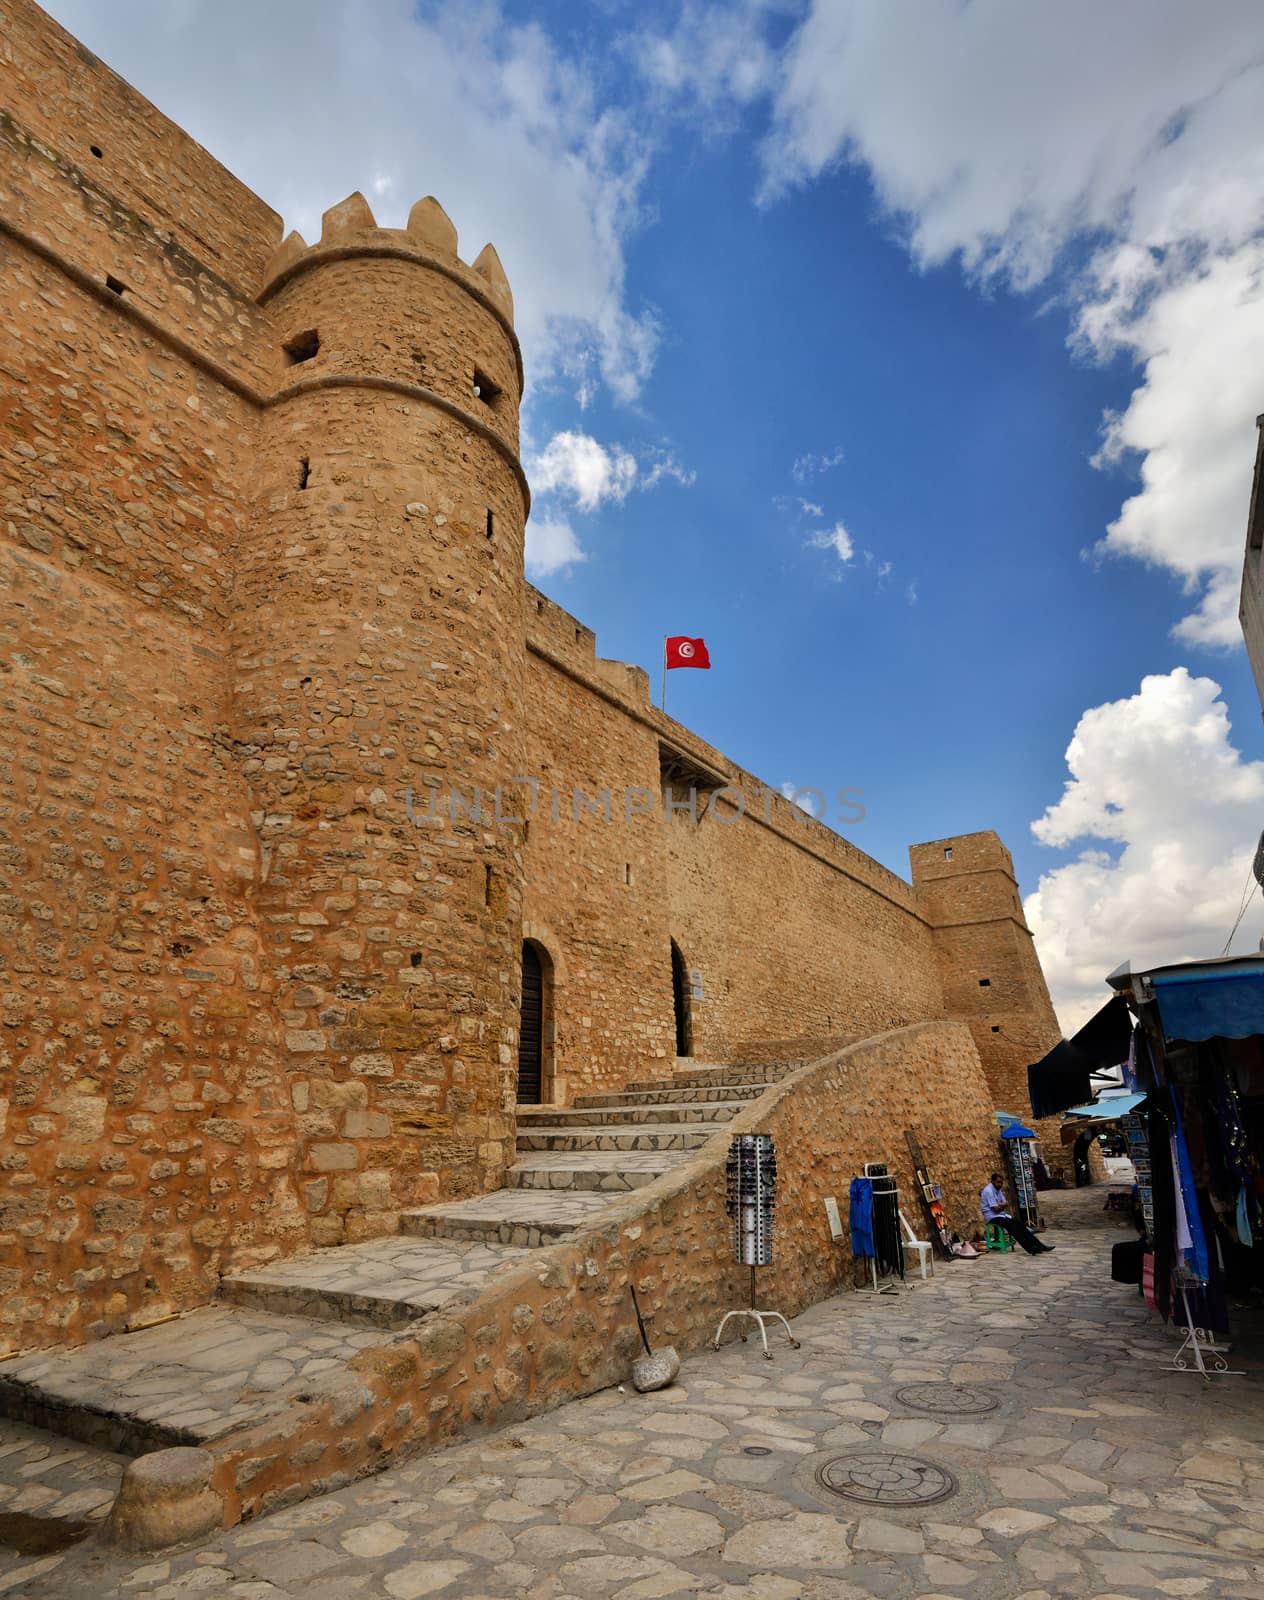 HAMMAMET, TUNISIA - OCT 2014: Wall of ancient Medina on October 6, 2014 in Hammamet, Tunisia